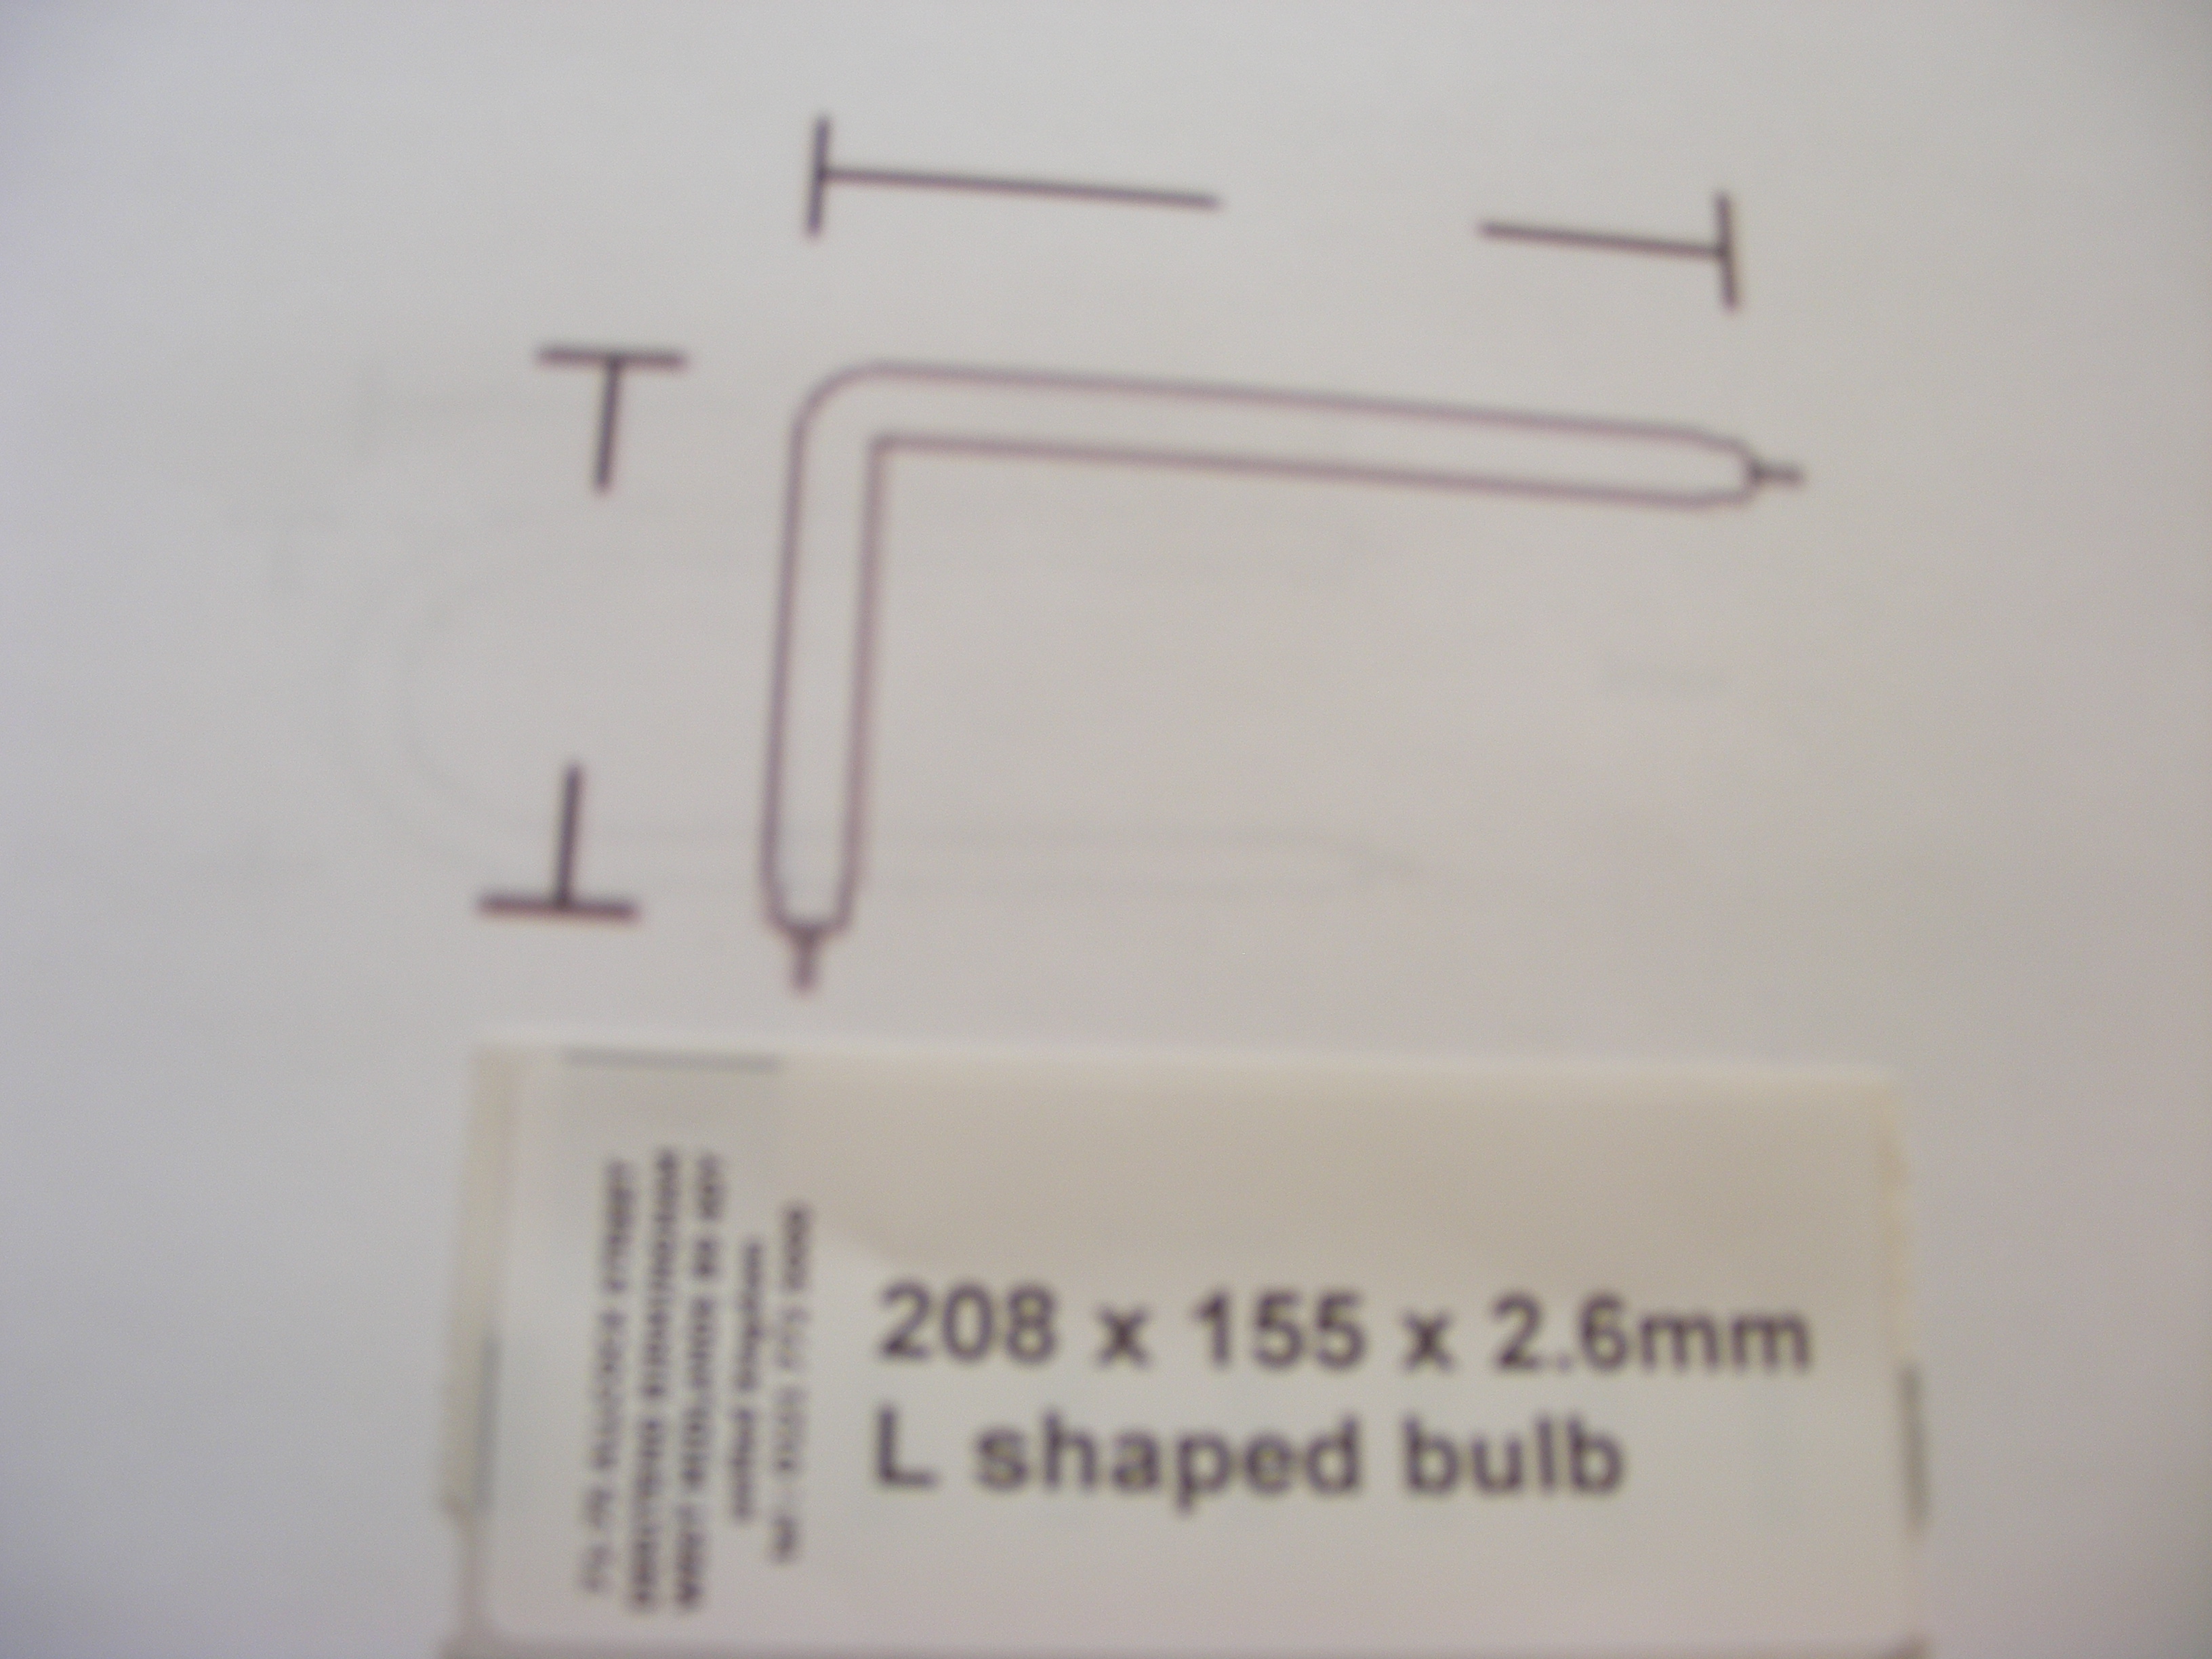 180 x 115 x 2.0mm L shaped bulb